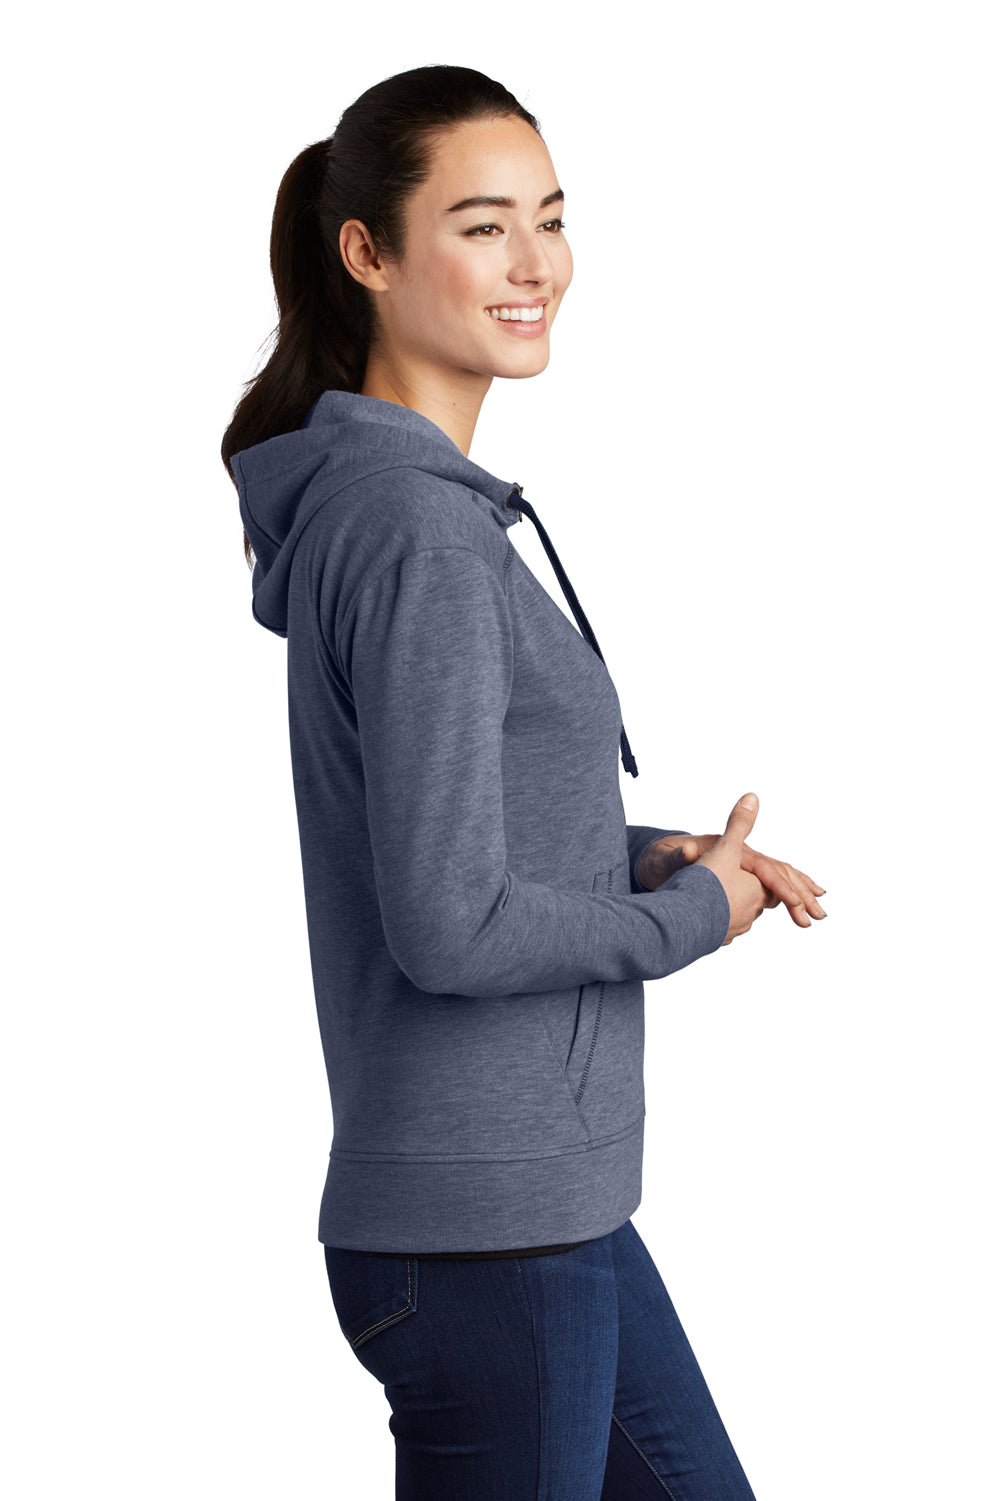 Sport-Tek Womens Moisture Wicking Fleece Full Zip Hooded Sweatshirt Hoodie Heather True Navy Blue Side